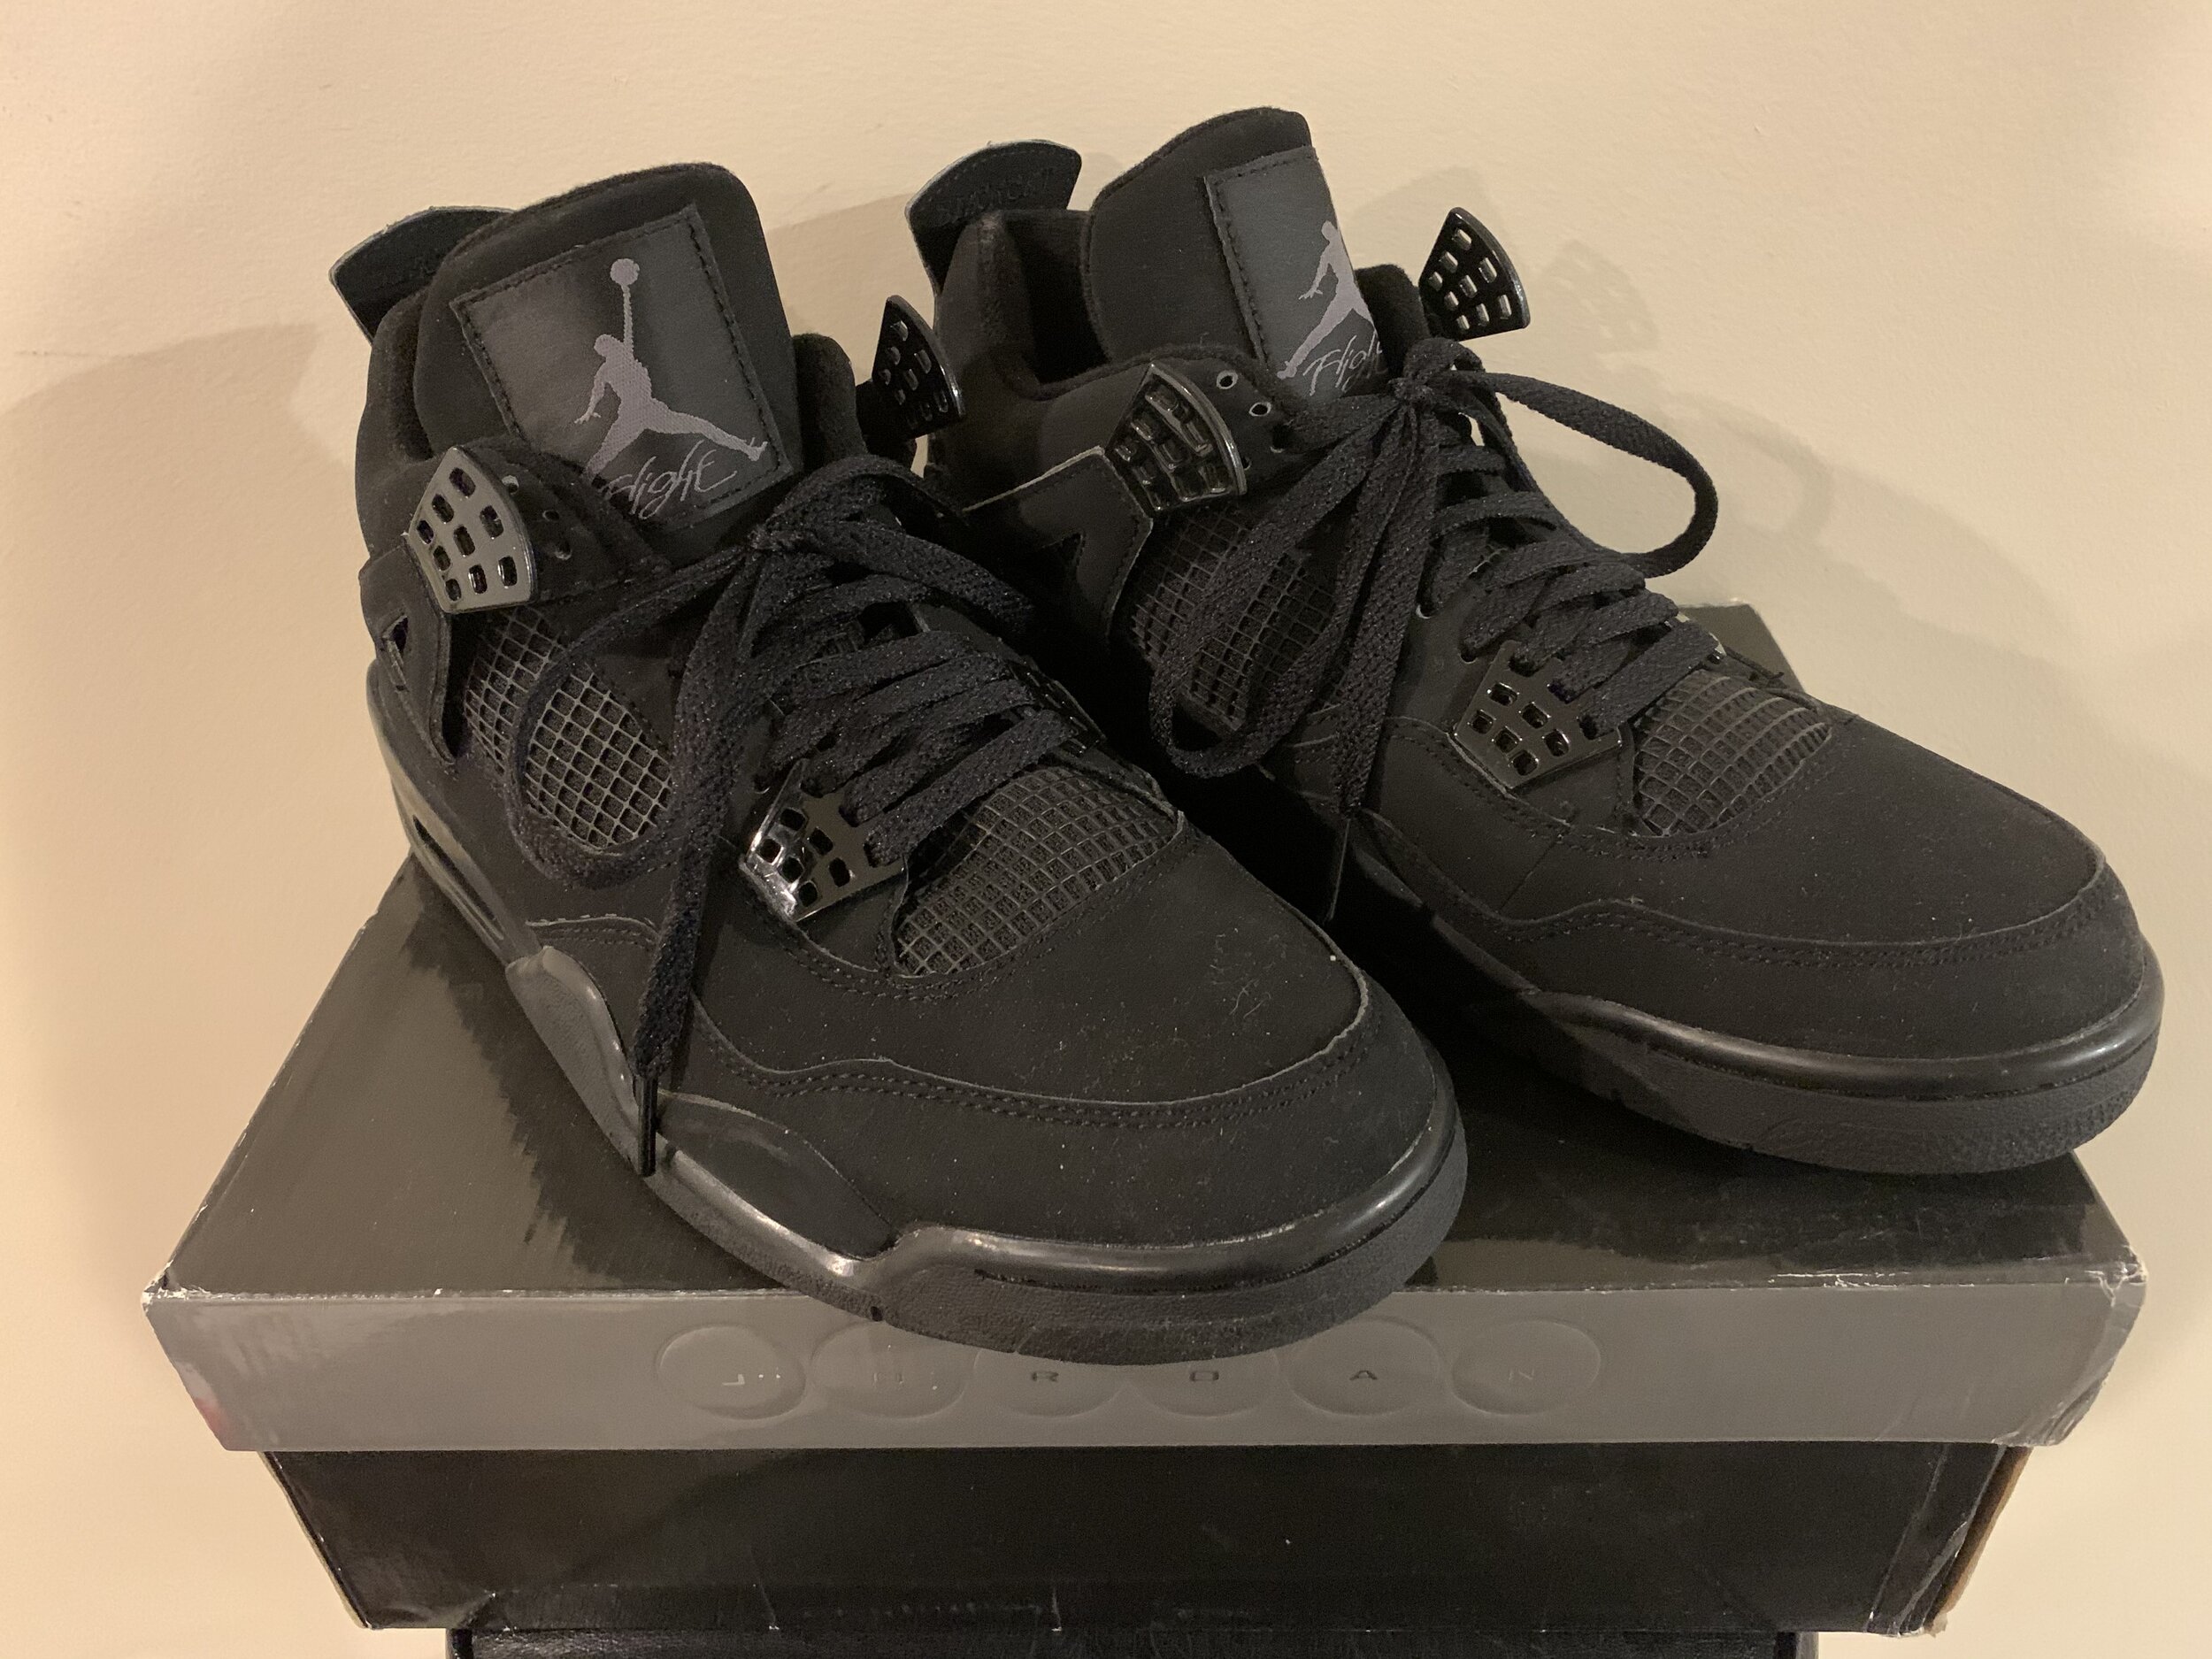 Nike_air Jordan Retro 4 Black Cat With Original Box